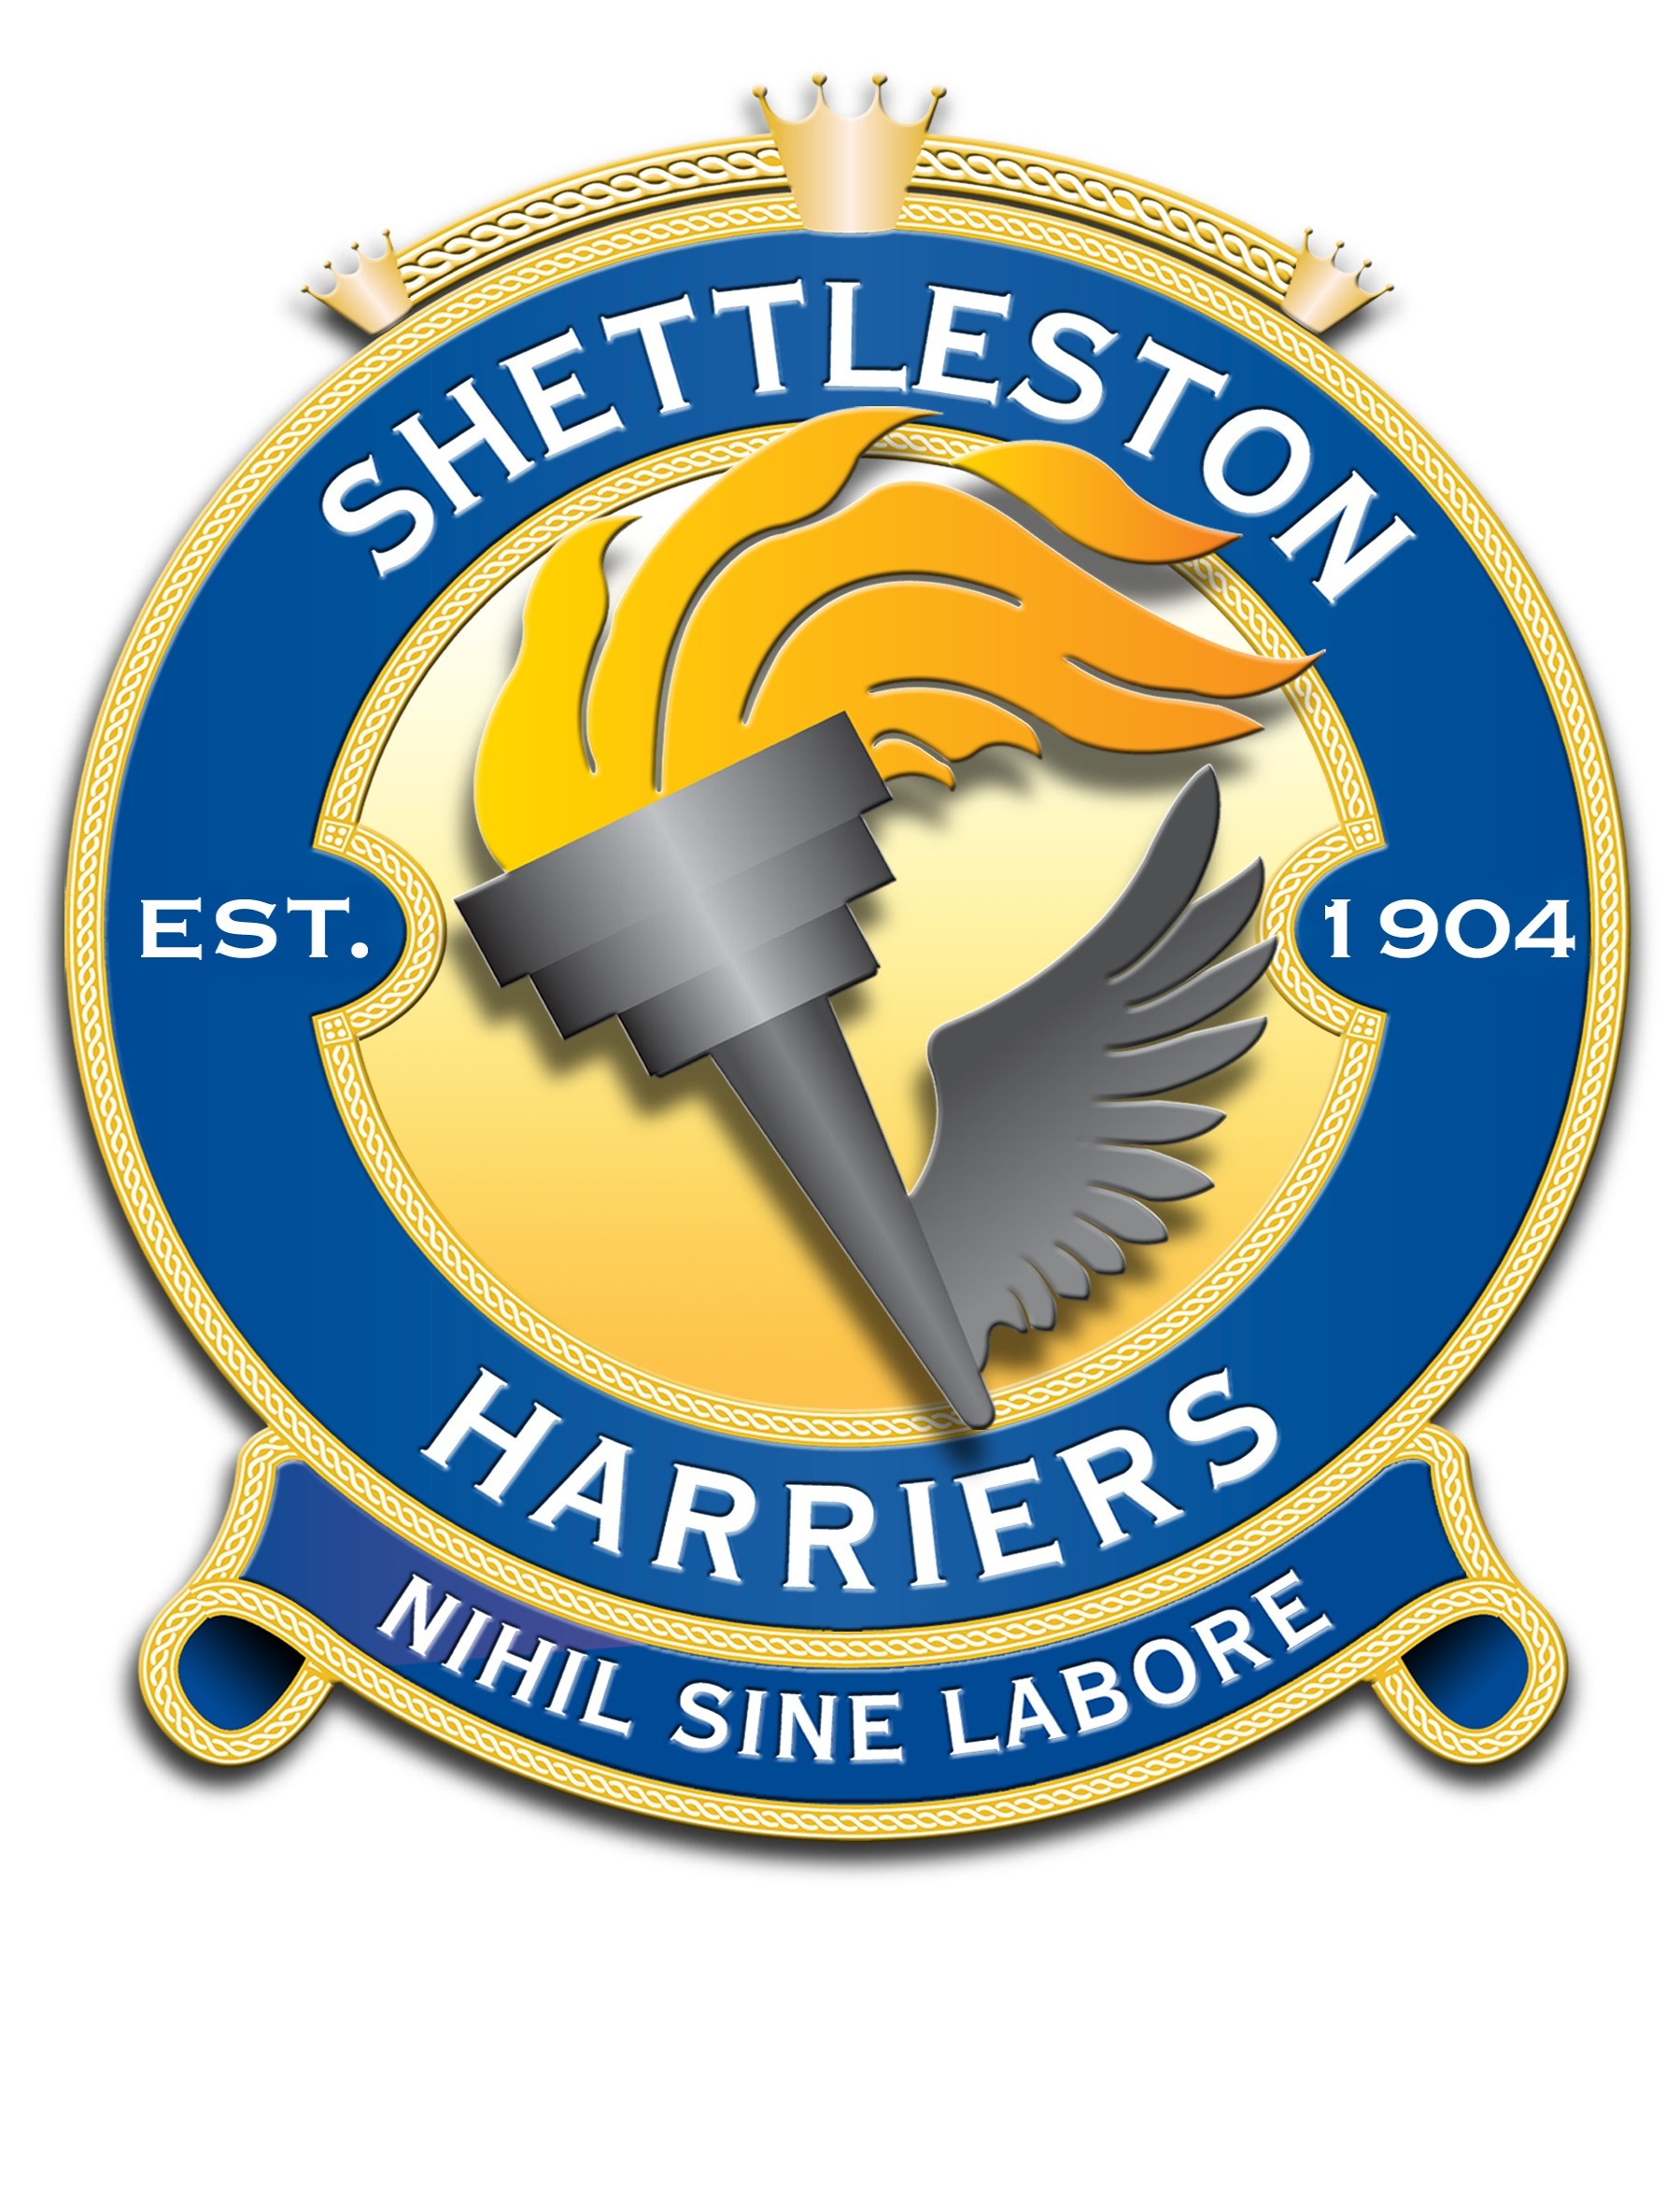 Shettleston Harriers logo